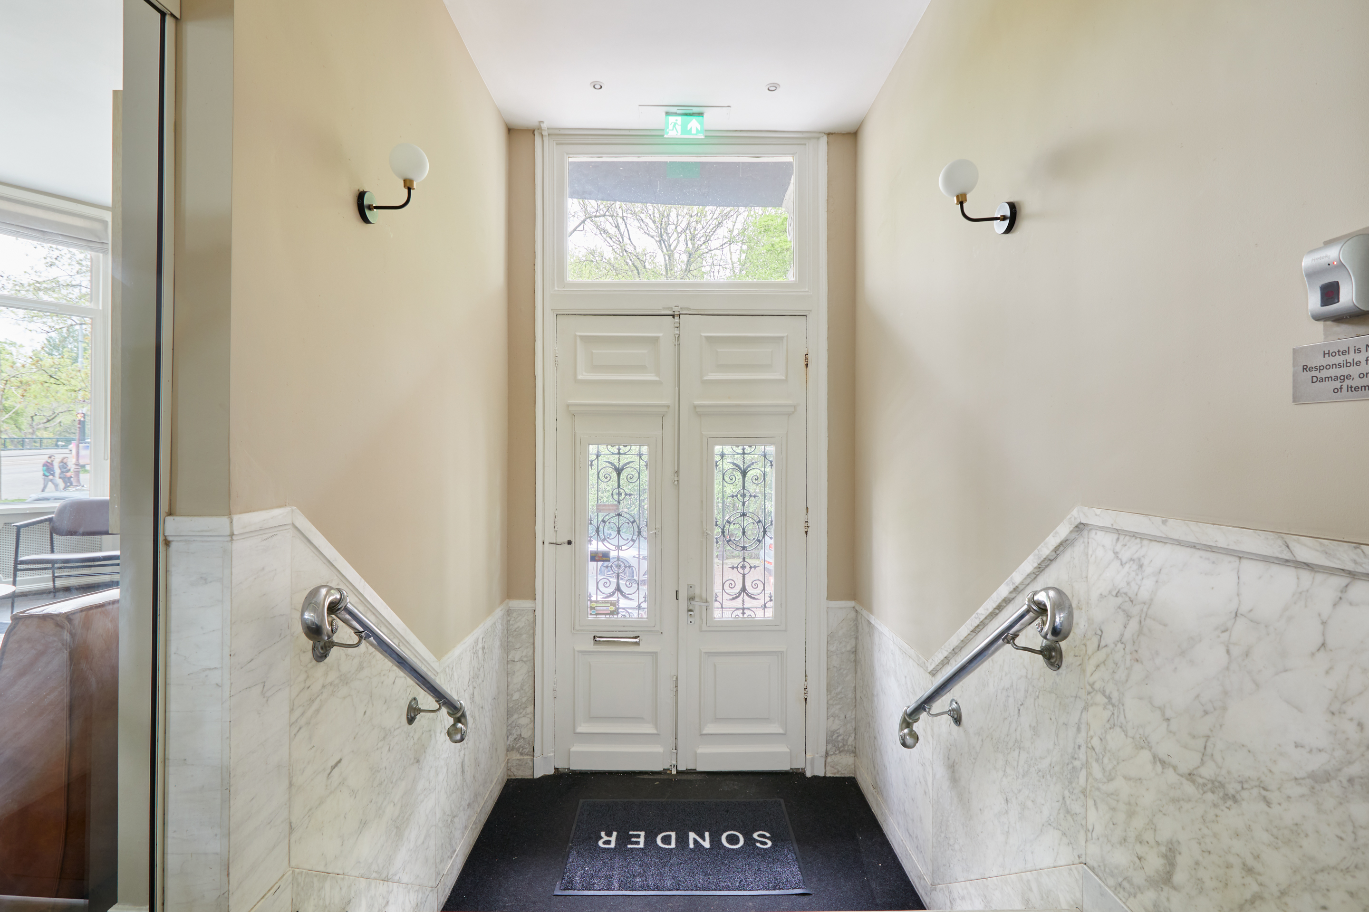 Hallway in Sonder hotel | Live Light